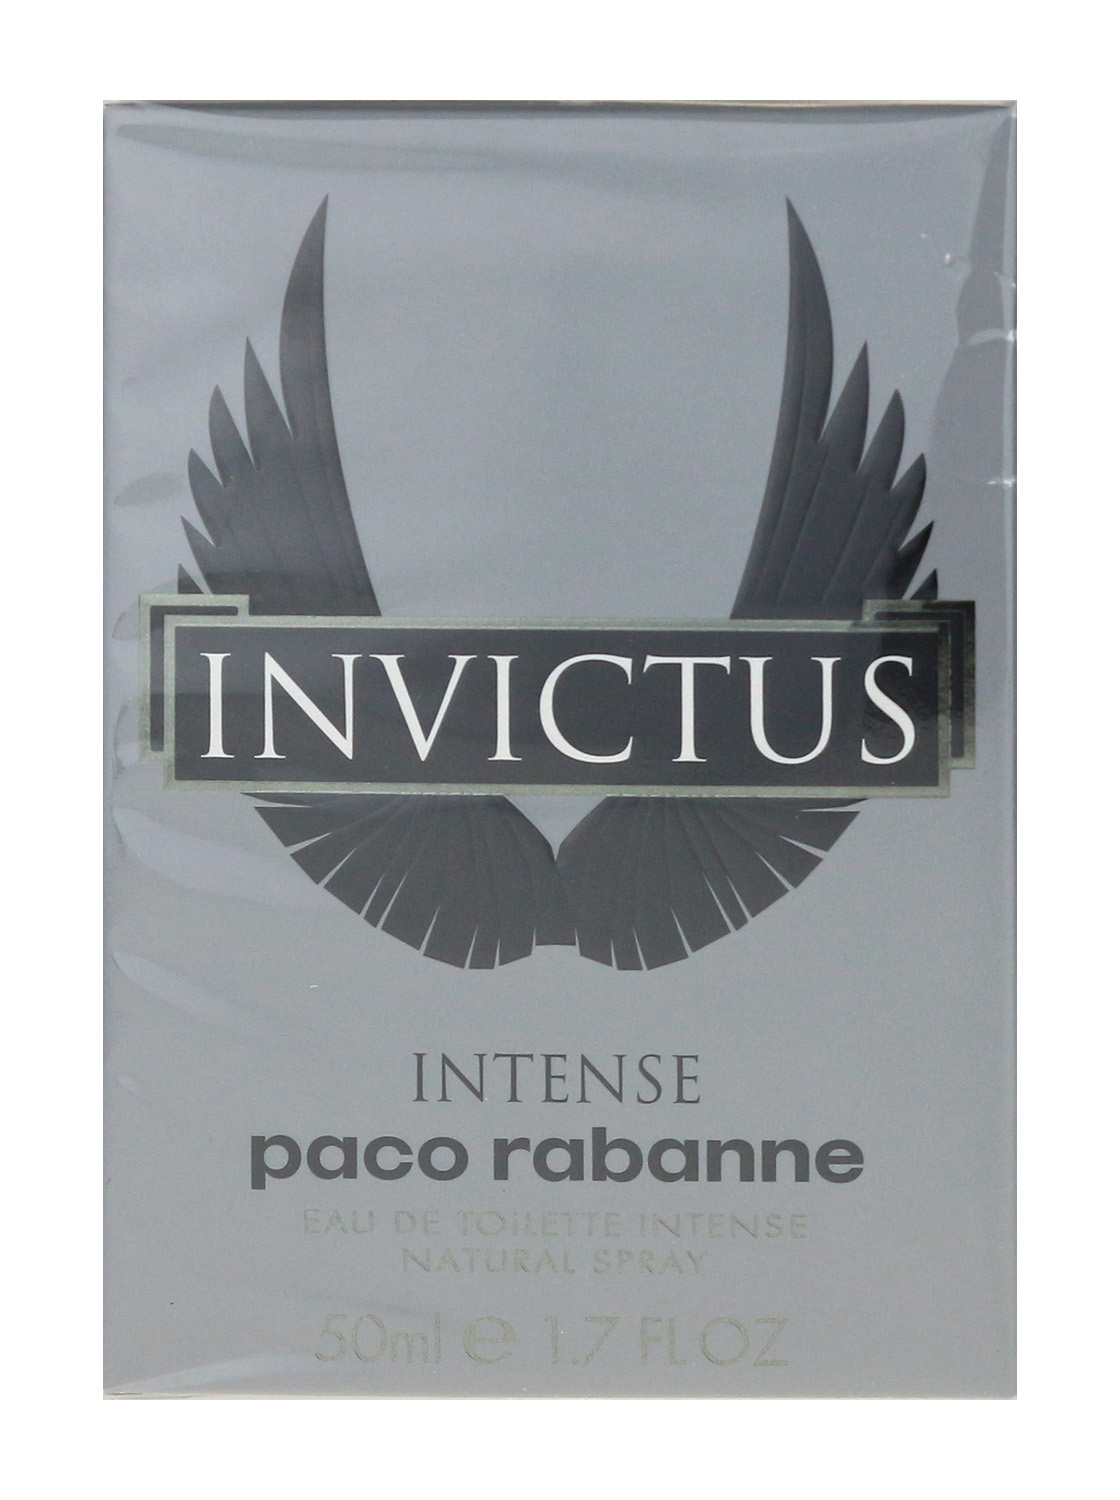 Paco Rabanne Invictus Intense Eau De Toilette Spray 1.7Oz/50ml New In ...